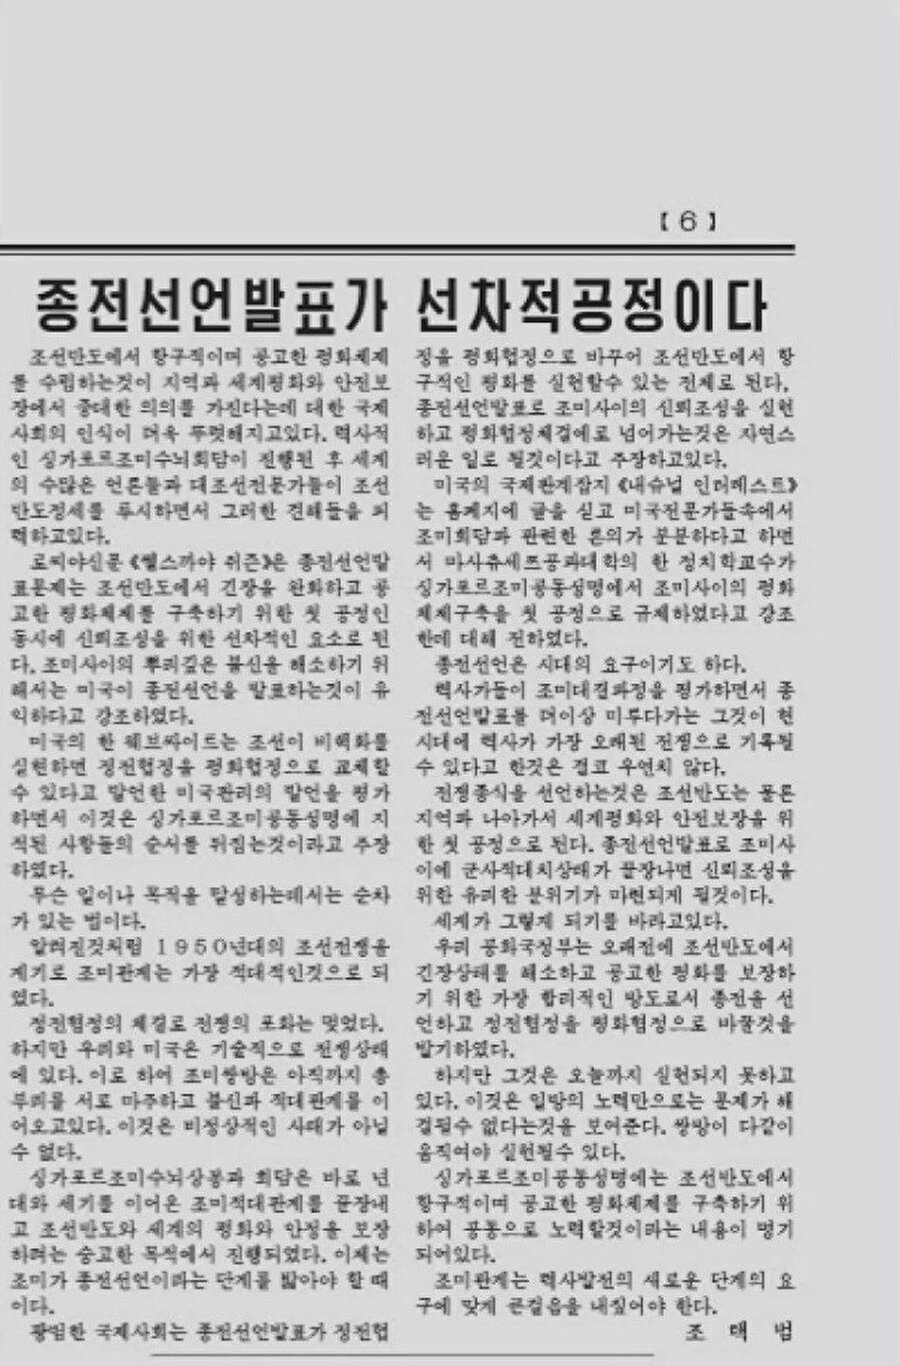 Gazetedeki açıklamada, Kuzey Kore hükumeti ABD tarafına, savaşa son vermeyi ve ateşkes anlaşmasının barış anlaşmasına dönüştürmeyi önerdi.